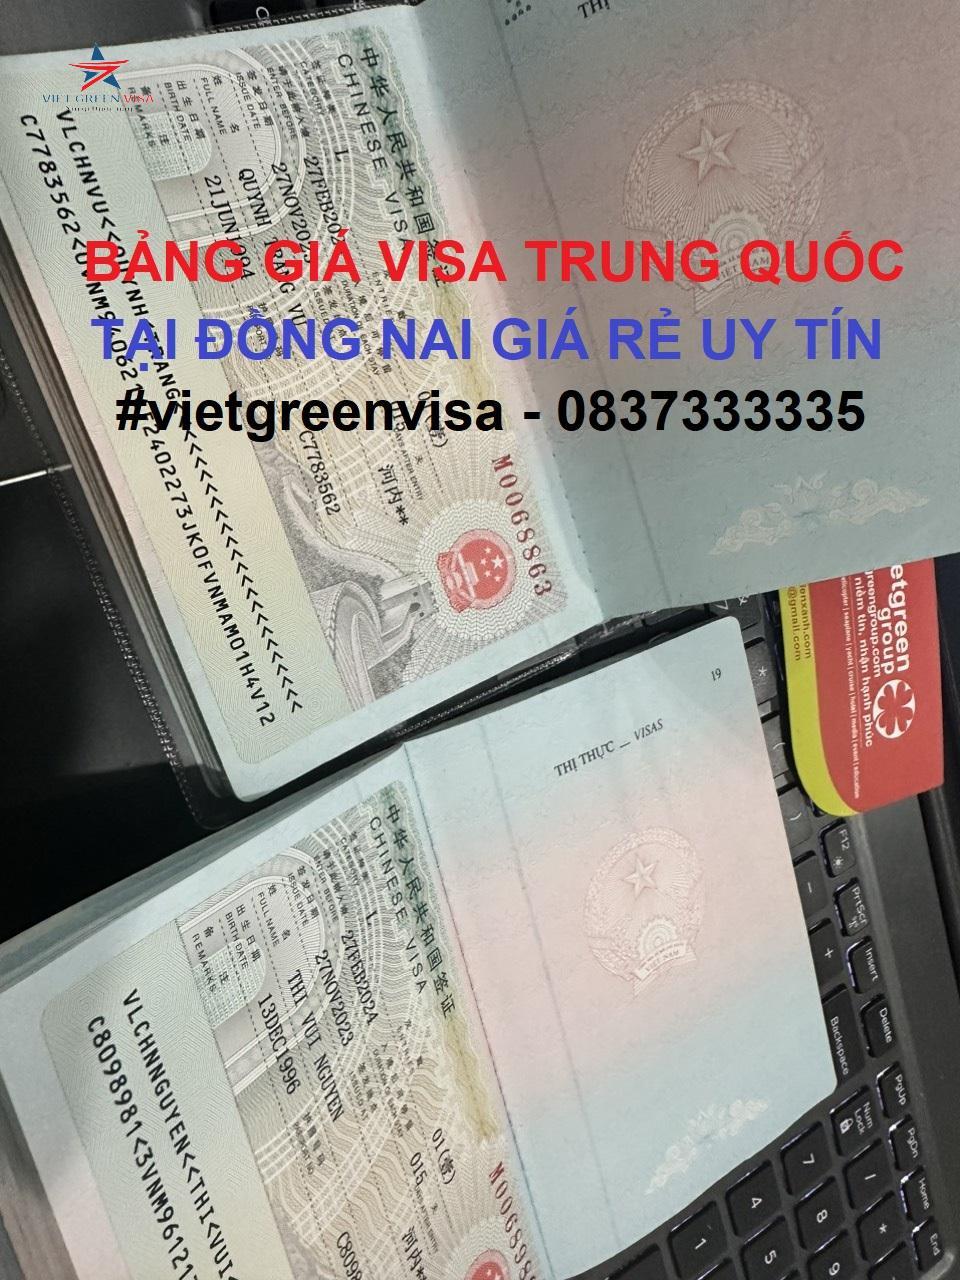 Dịch vụ xin visa Trung Quốc tại Đồng Nai giá rẻ